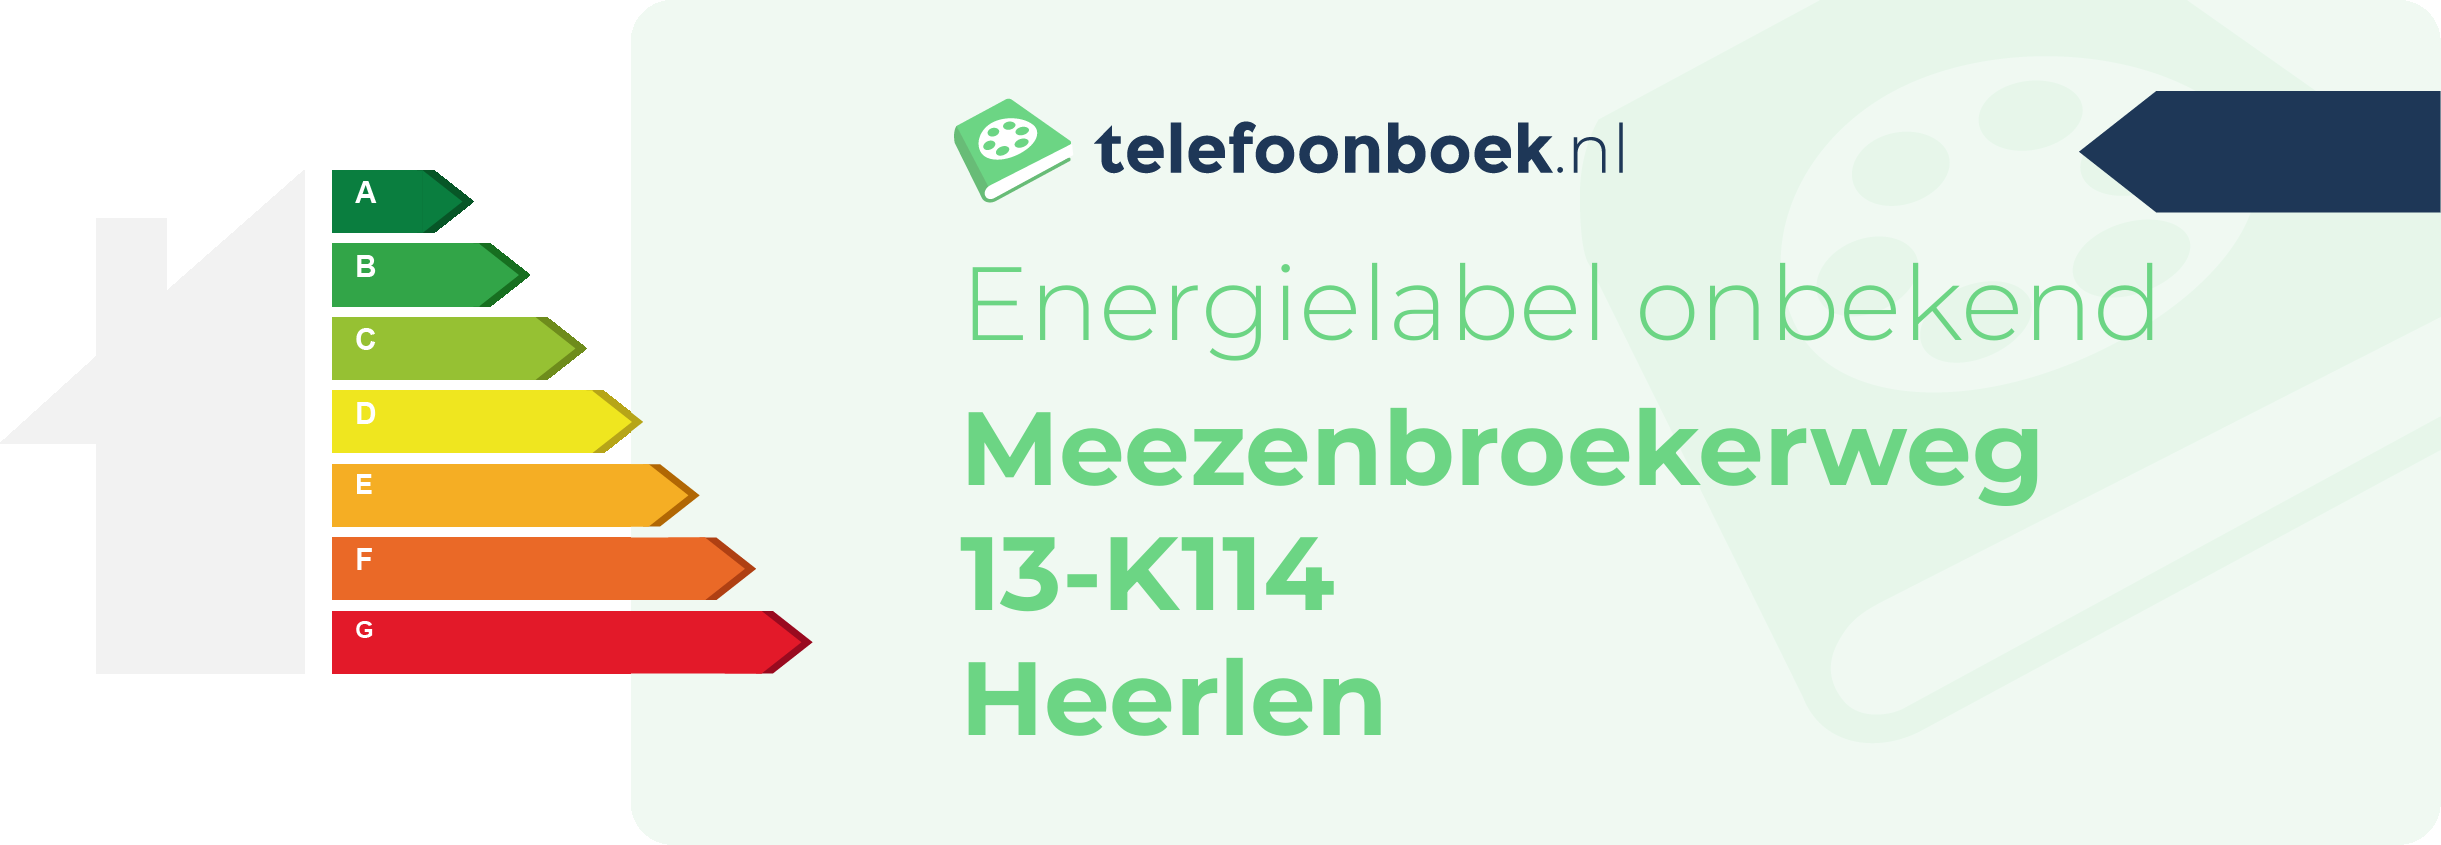 Energielabel Meezenbroekerweg 13-K114 Heerlen